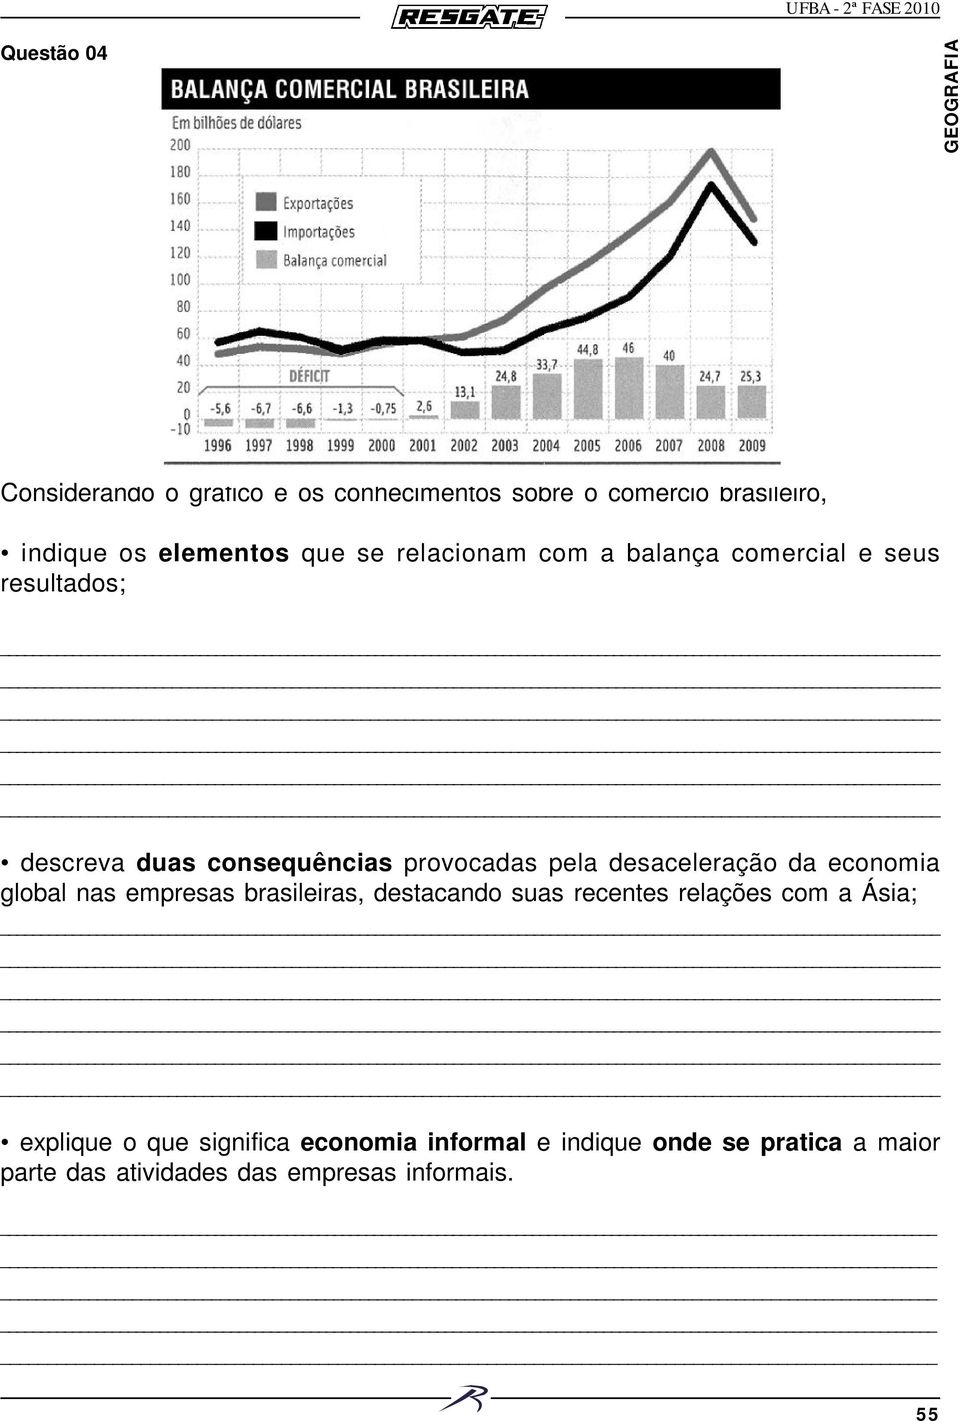 desaceleração da economia global nas empresas brasileiras, destacando suas recentes relações com a Ásia;